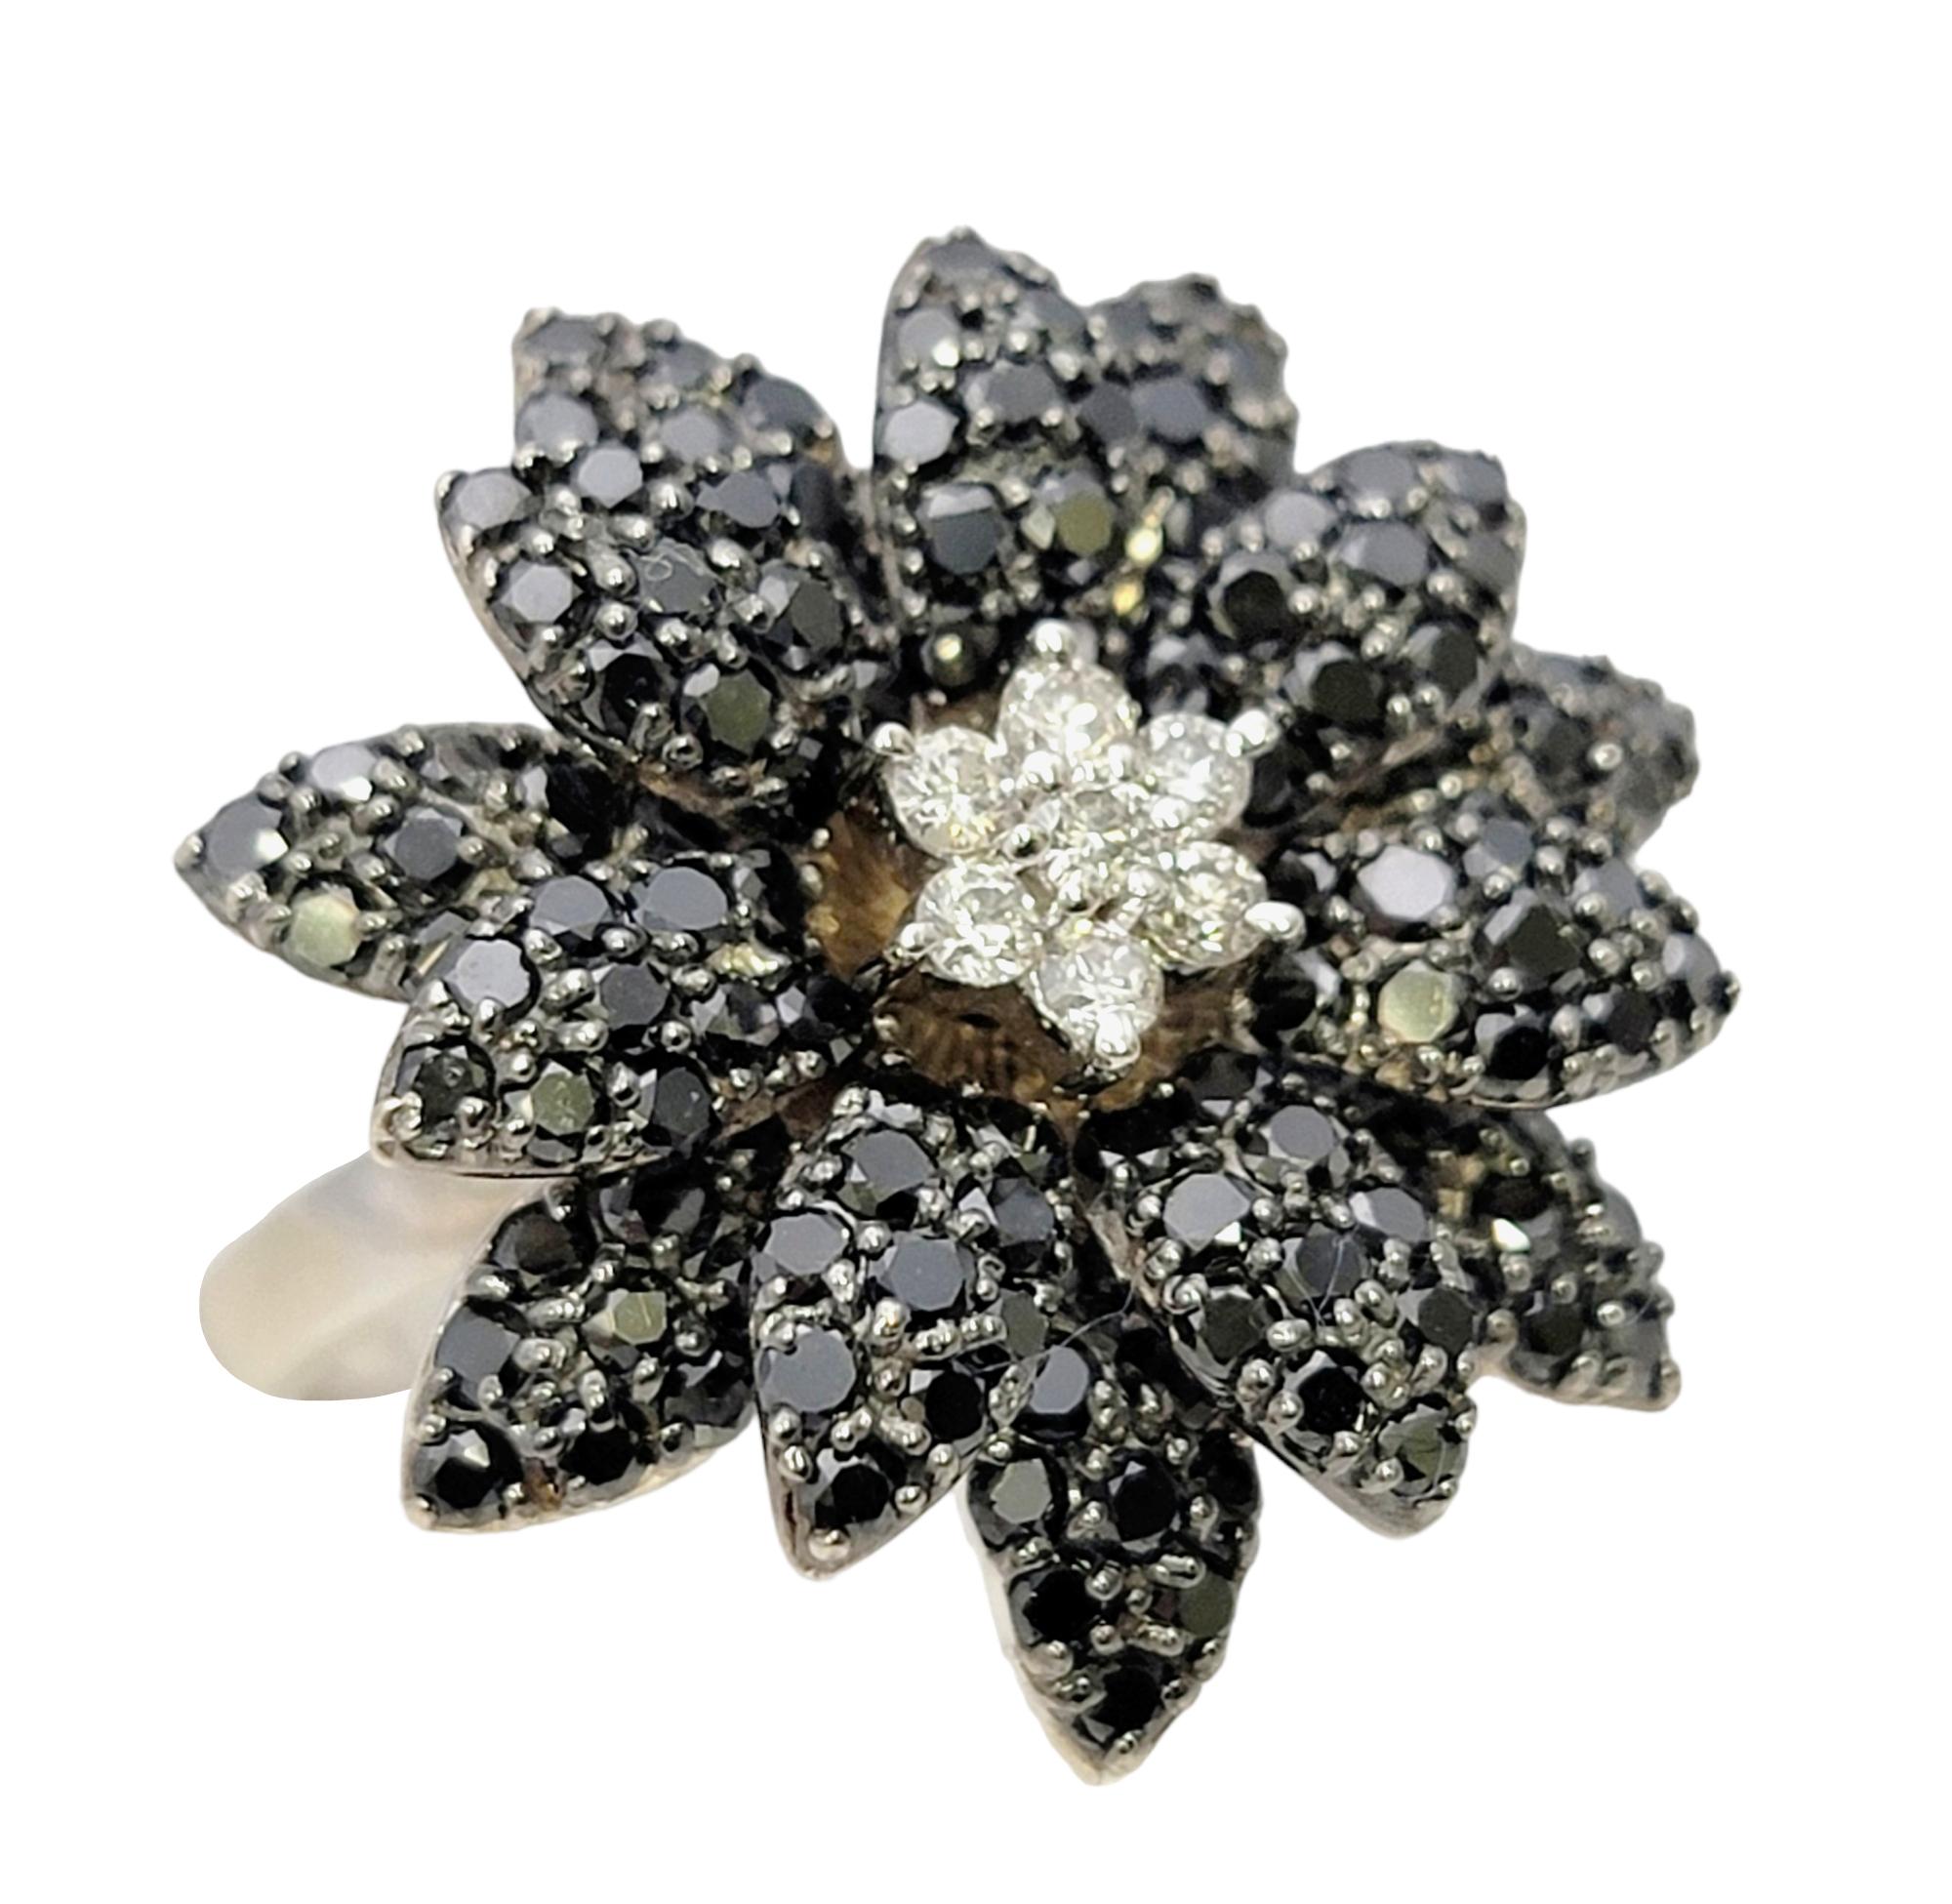 Ringgröße: 6.75

Spektakulär funkelnder schwarzer und weißer Blumenring mit Diamanten in Pflasterung. Dieses atemberaubende Schmuckstück besticht durch seine exquisite Handwerkskunst. Alle Augen werden auf diese glitzernde Diamantschönheit gerichtet